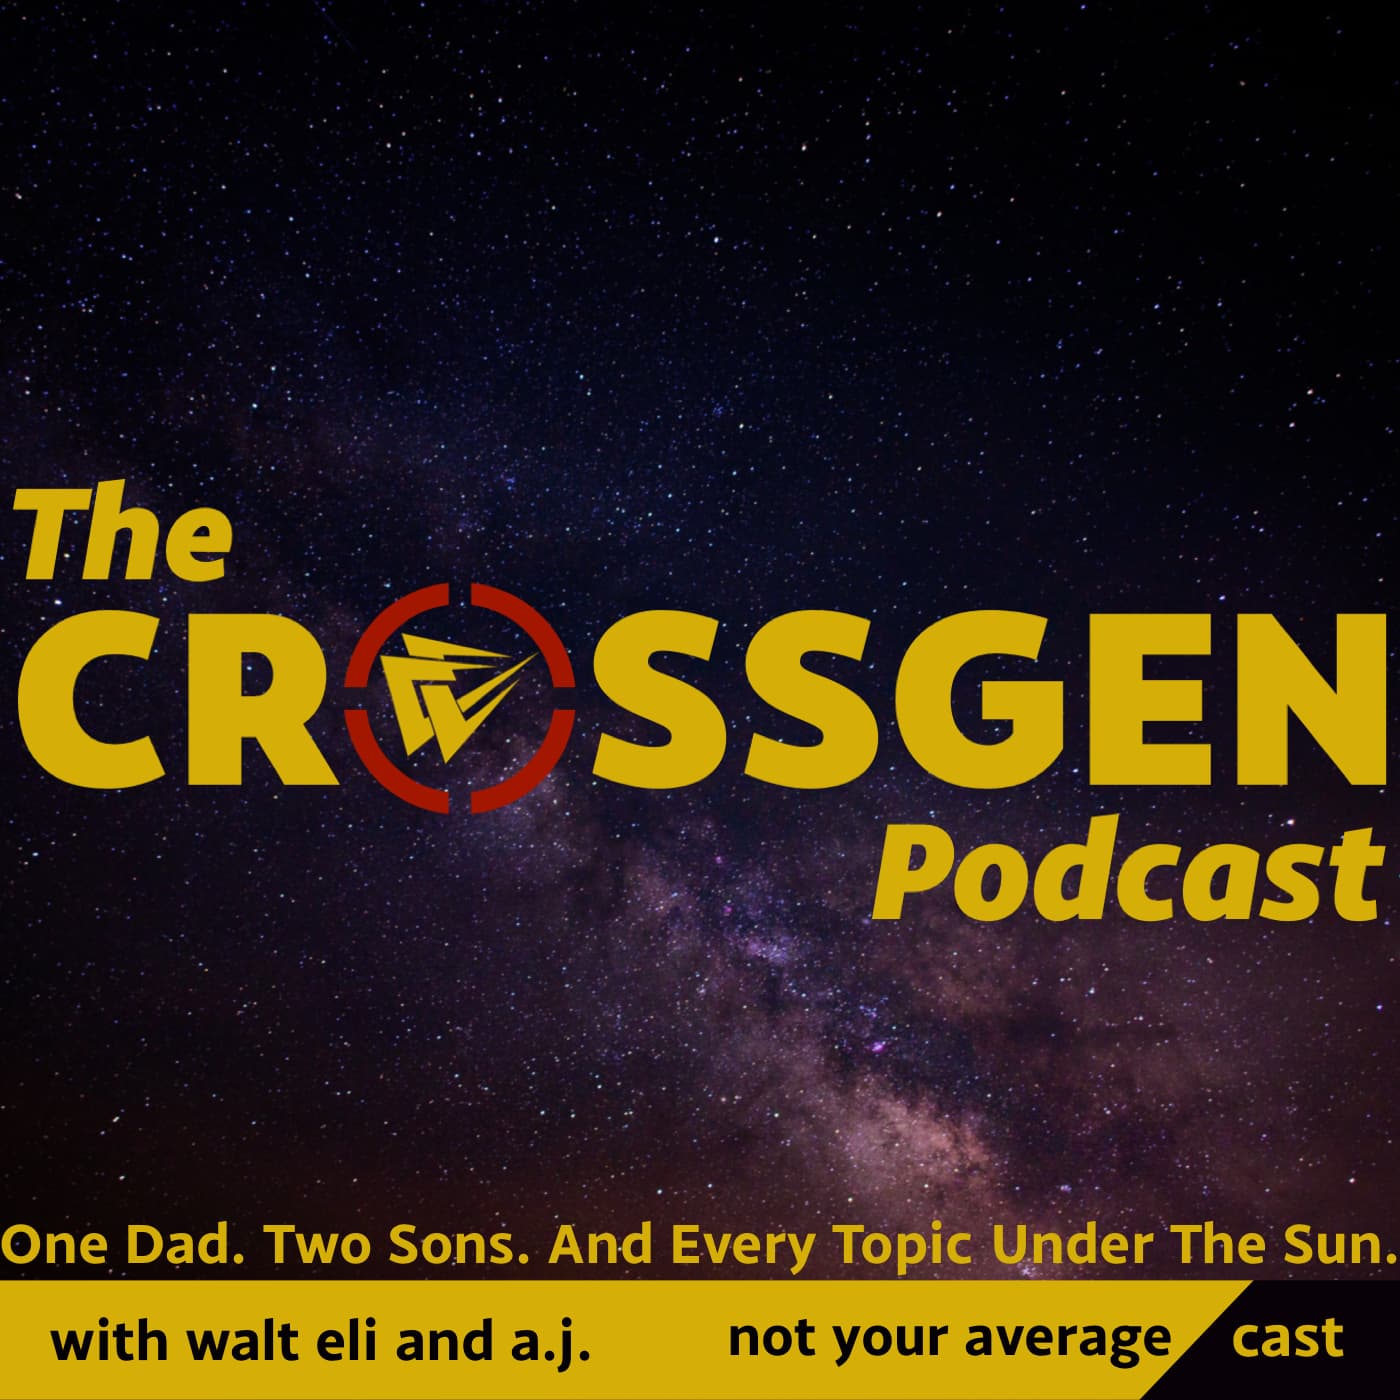 The CrossGen Podcast's artwork